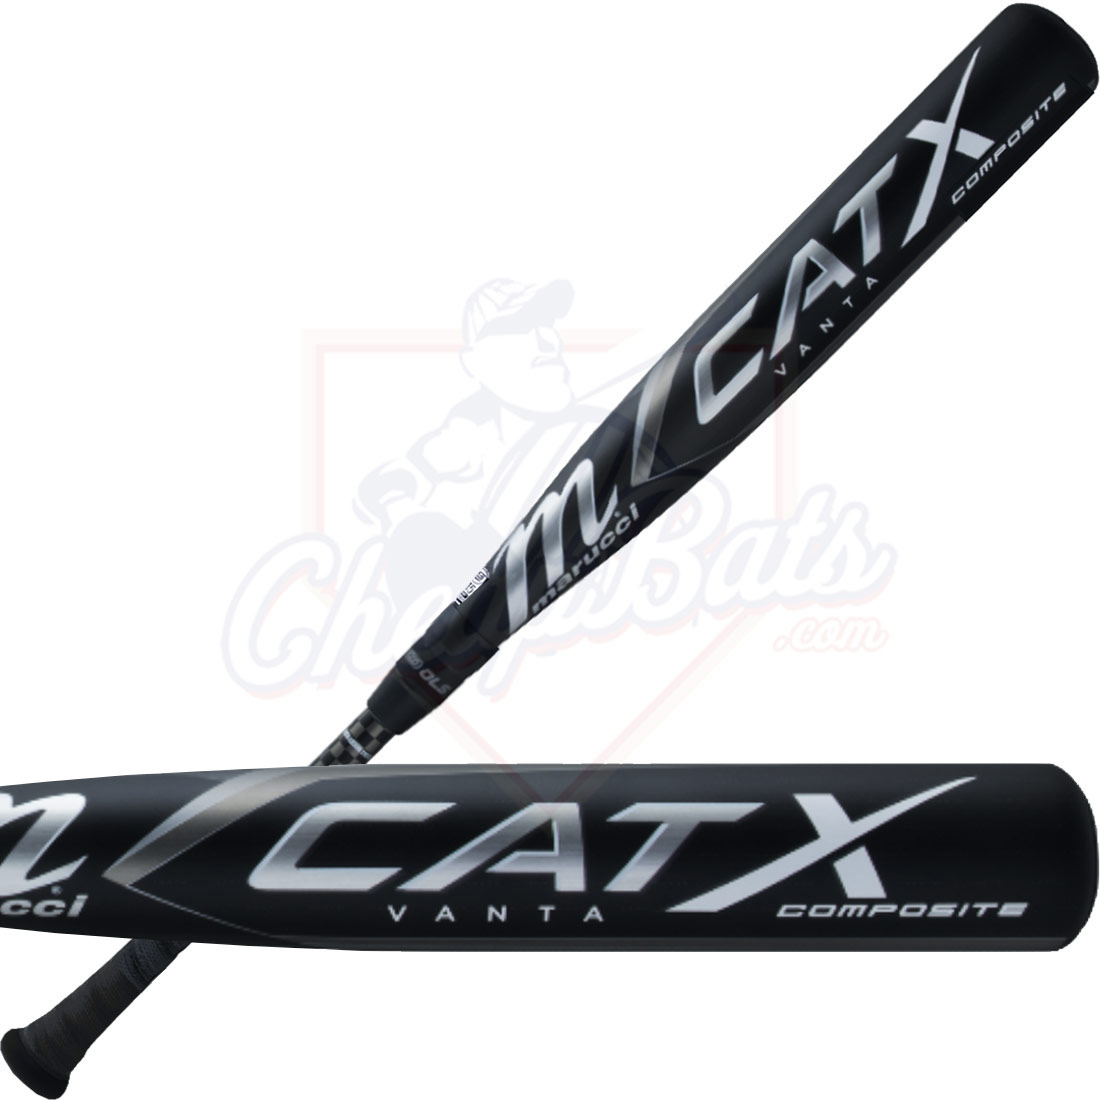 Marucci Cat X Vanta Composite Youth USSSA Baseball Bat